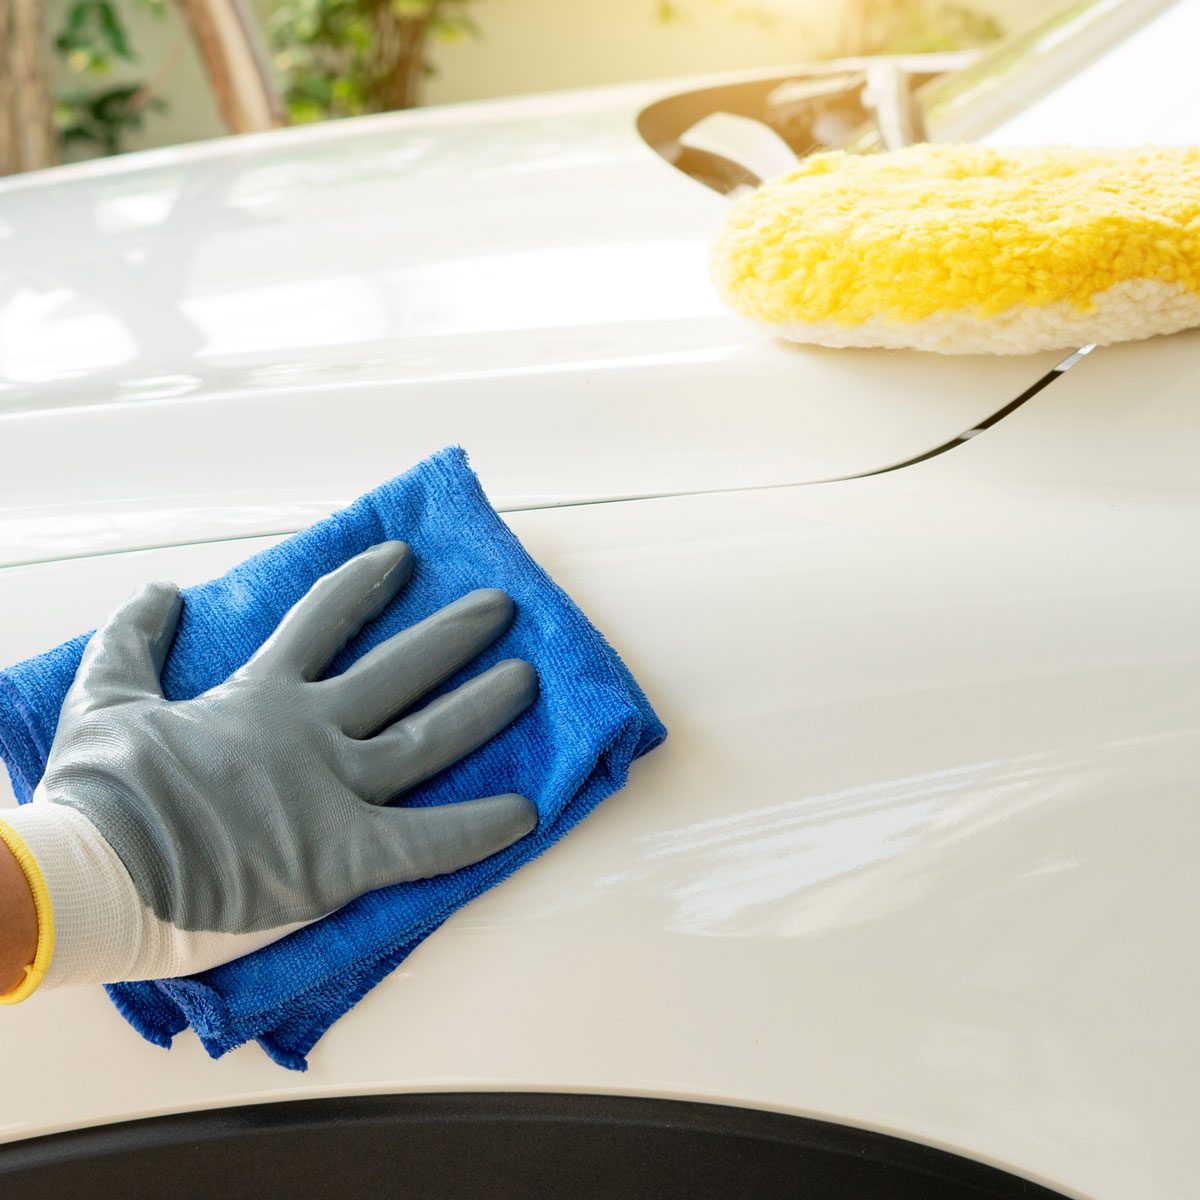 Premium Car Wax Sprays & DIY Car Detailing Supplies - Torque Detail